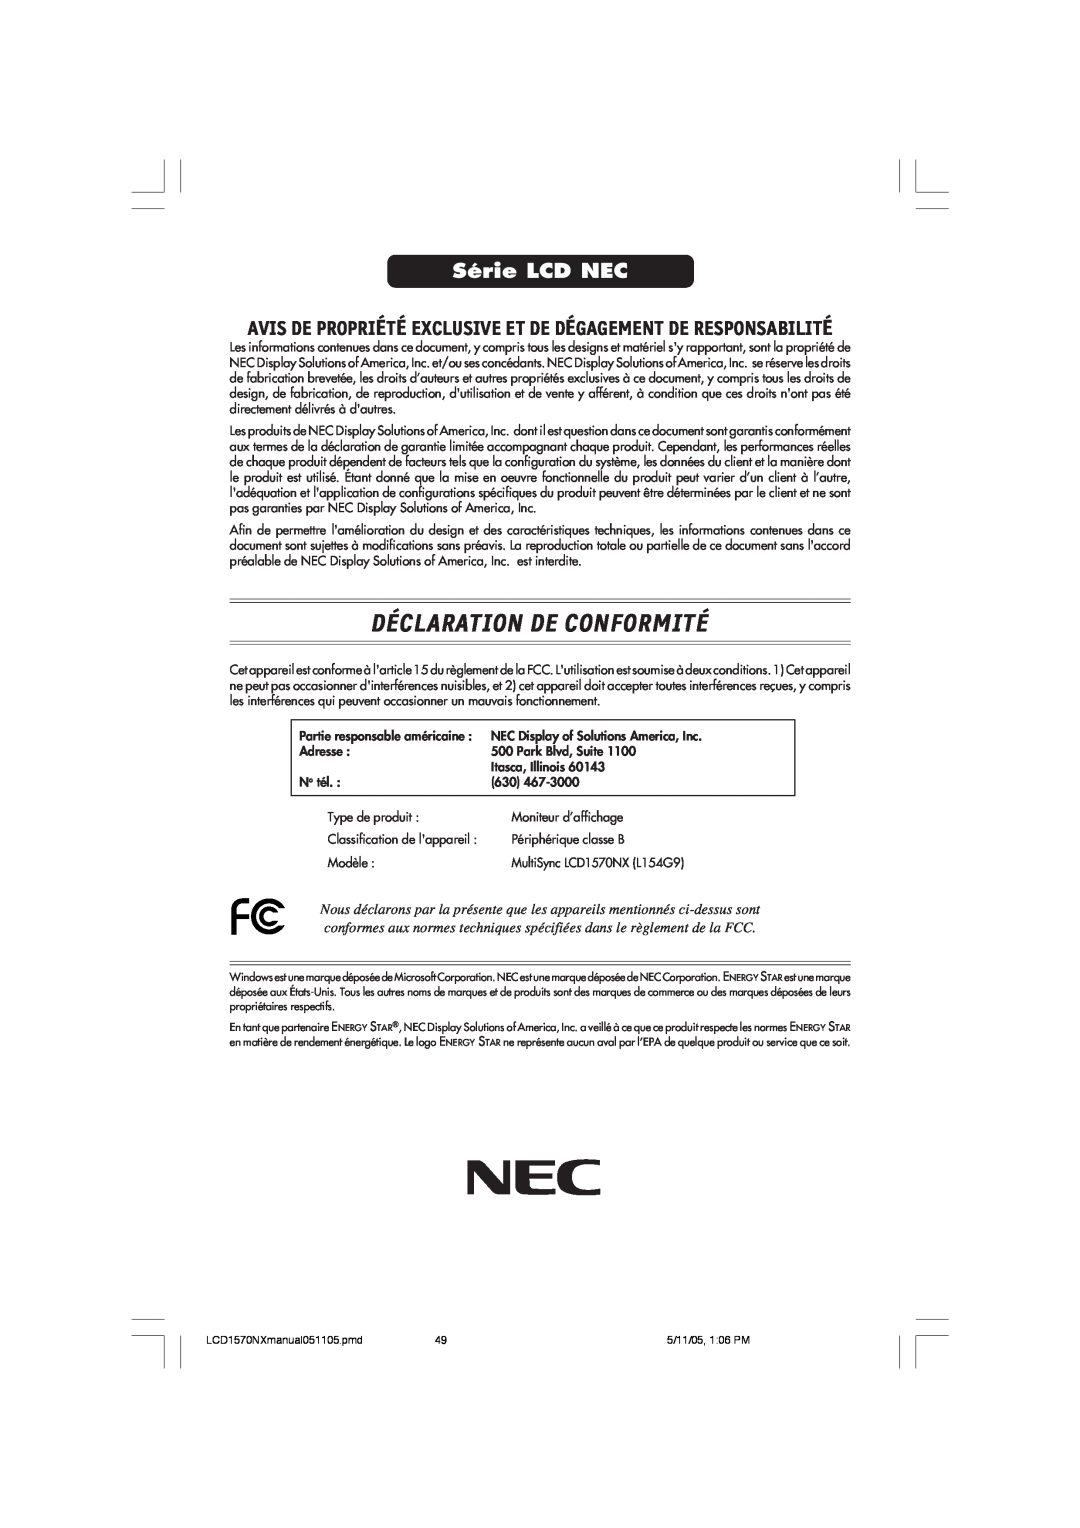 NEC LCD1570NX Déclaration De Conformité, Série LCD NEC, Avis De Propriété Exclusive Et De Dégagement De Responsabilité 